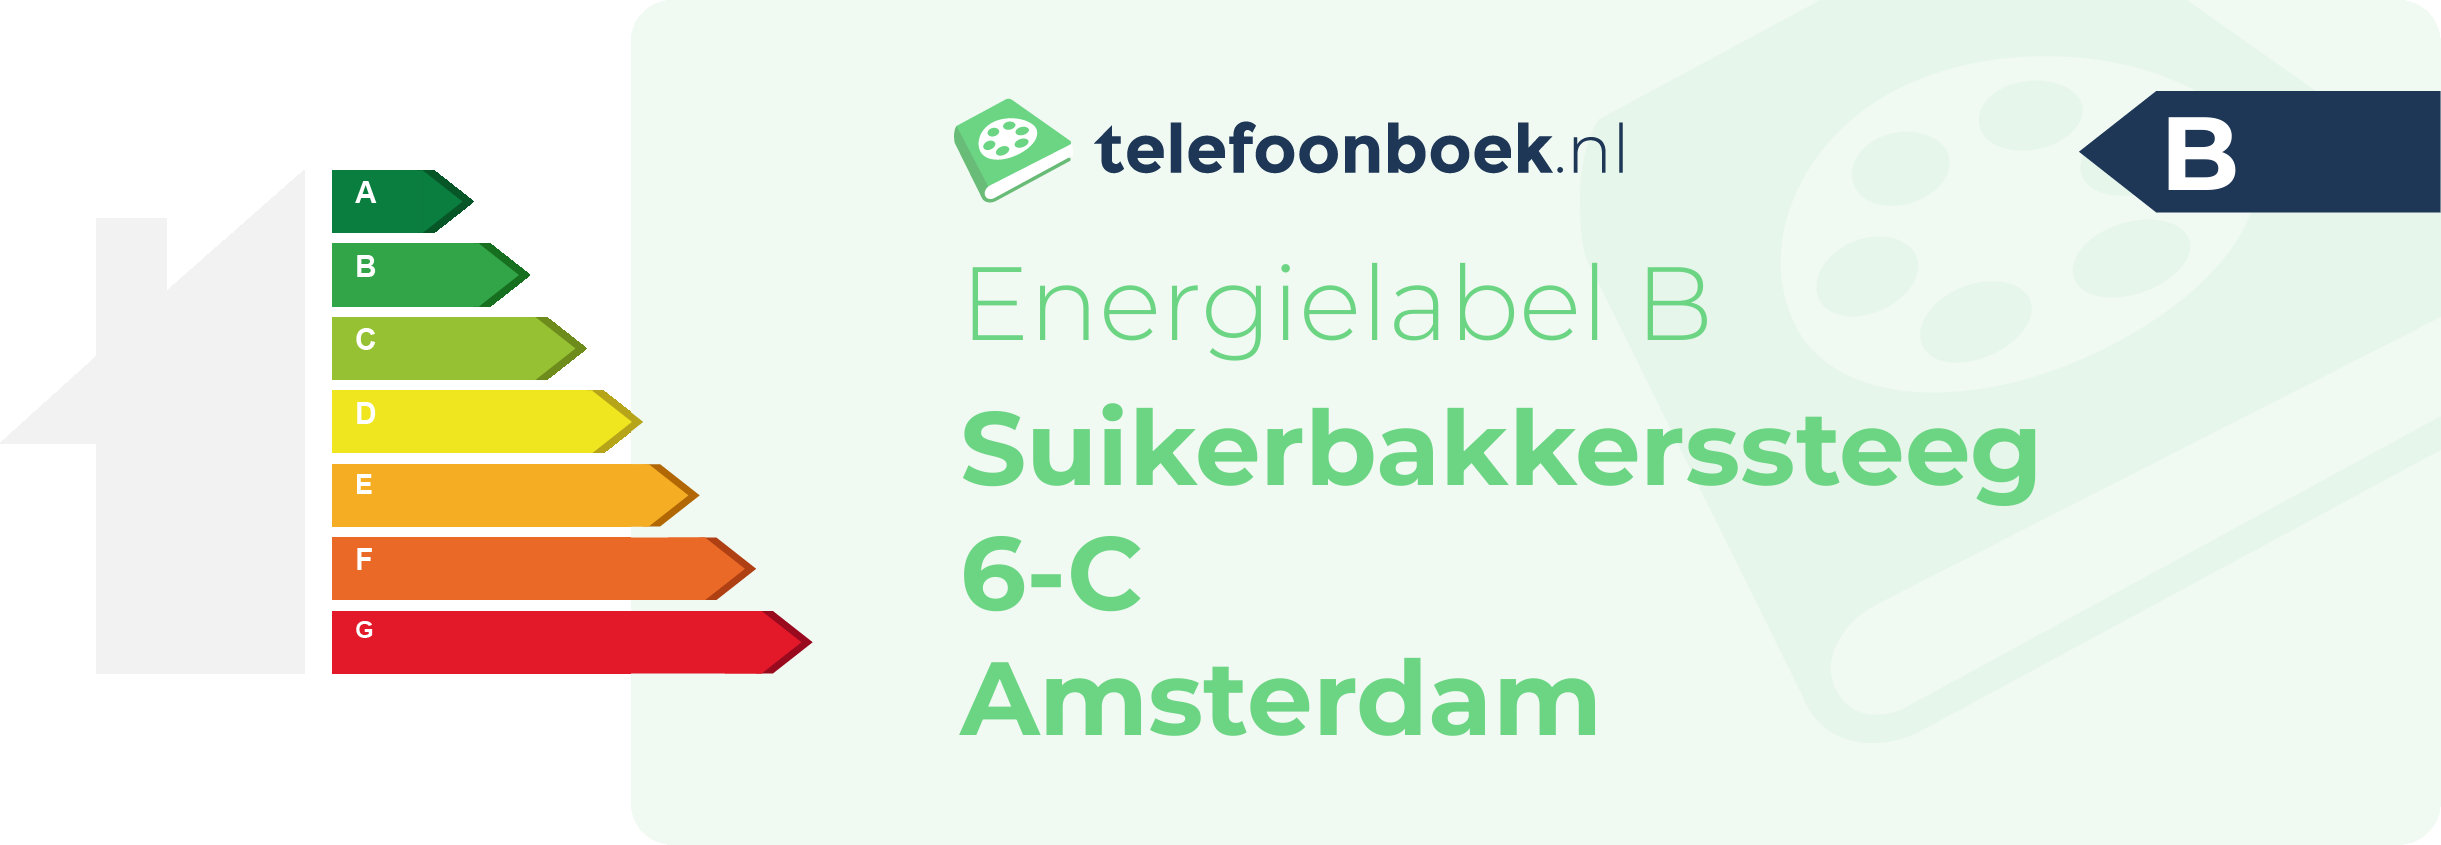 Energielabel Suikerbakkerssteeg 6-C Amsterdam